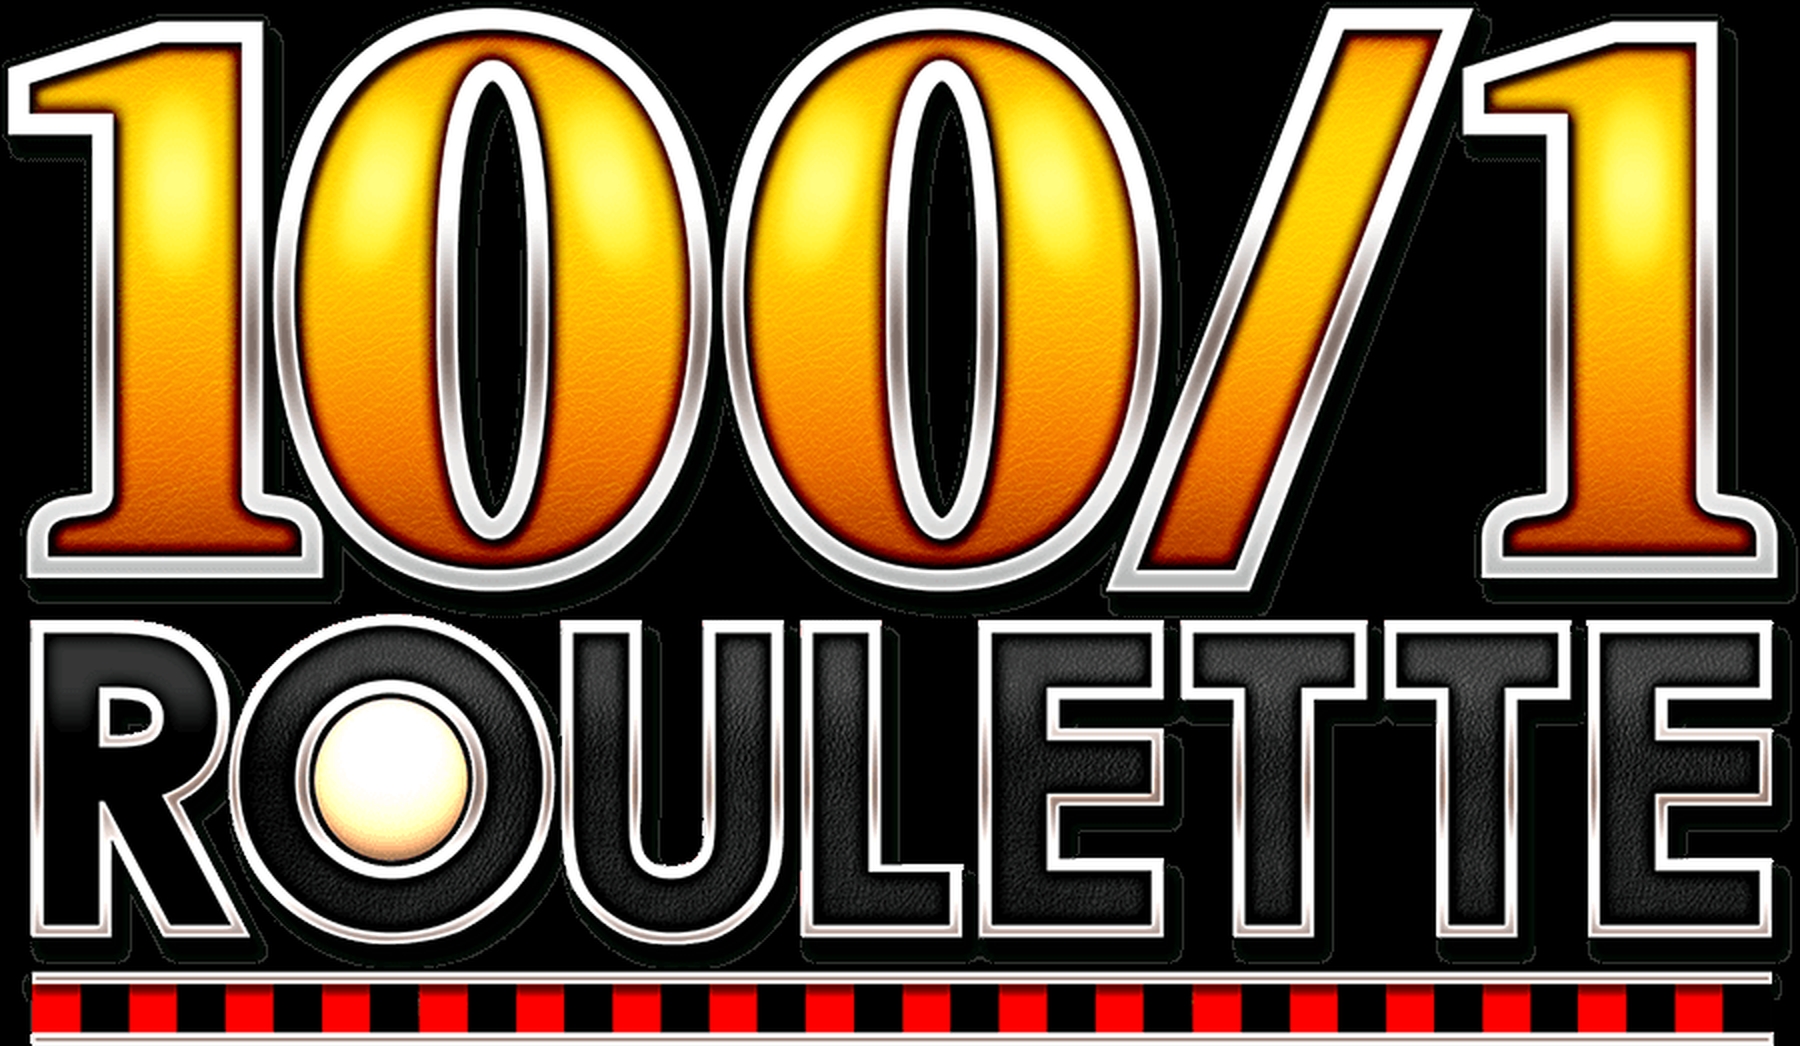 100/1 Roulette demo